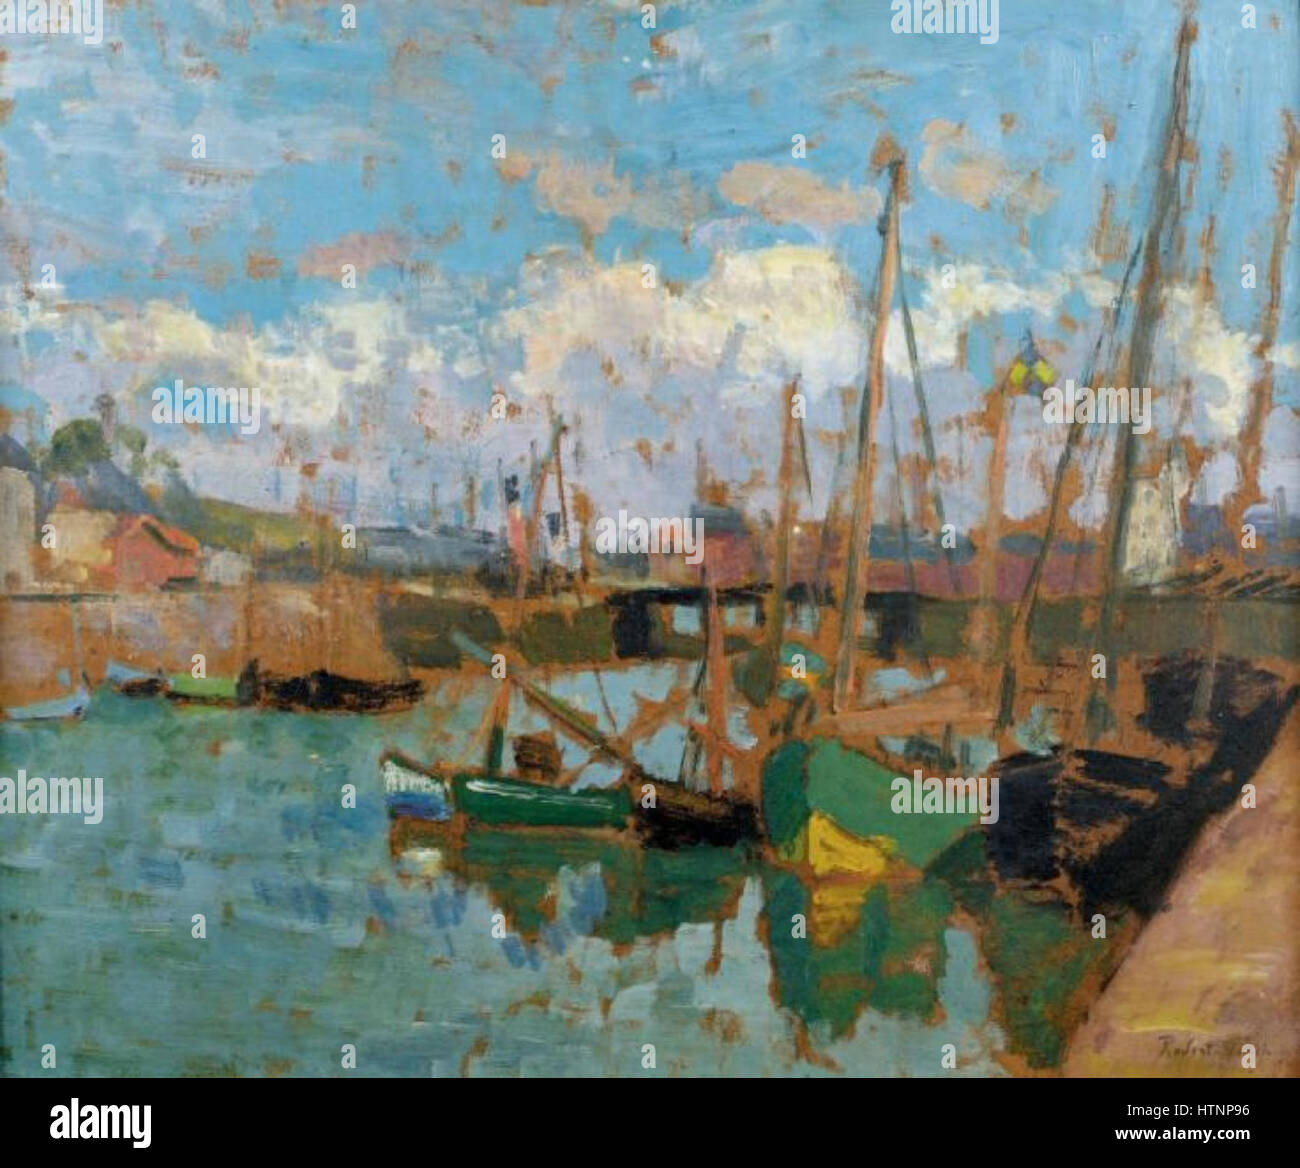 Robert Antoine Pinchon, Bateaux au port, oil on carton, 46 x 55 cm Stock Photo